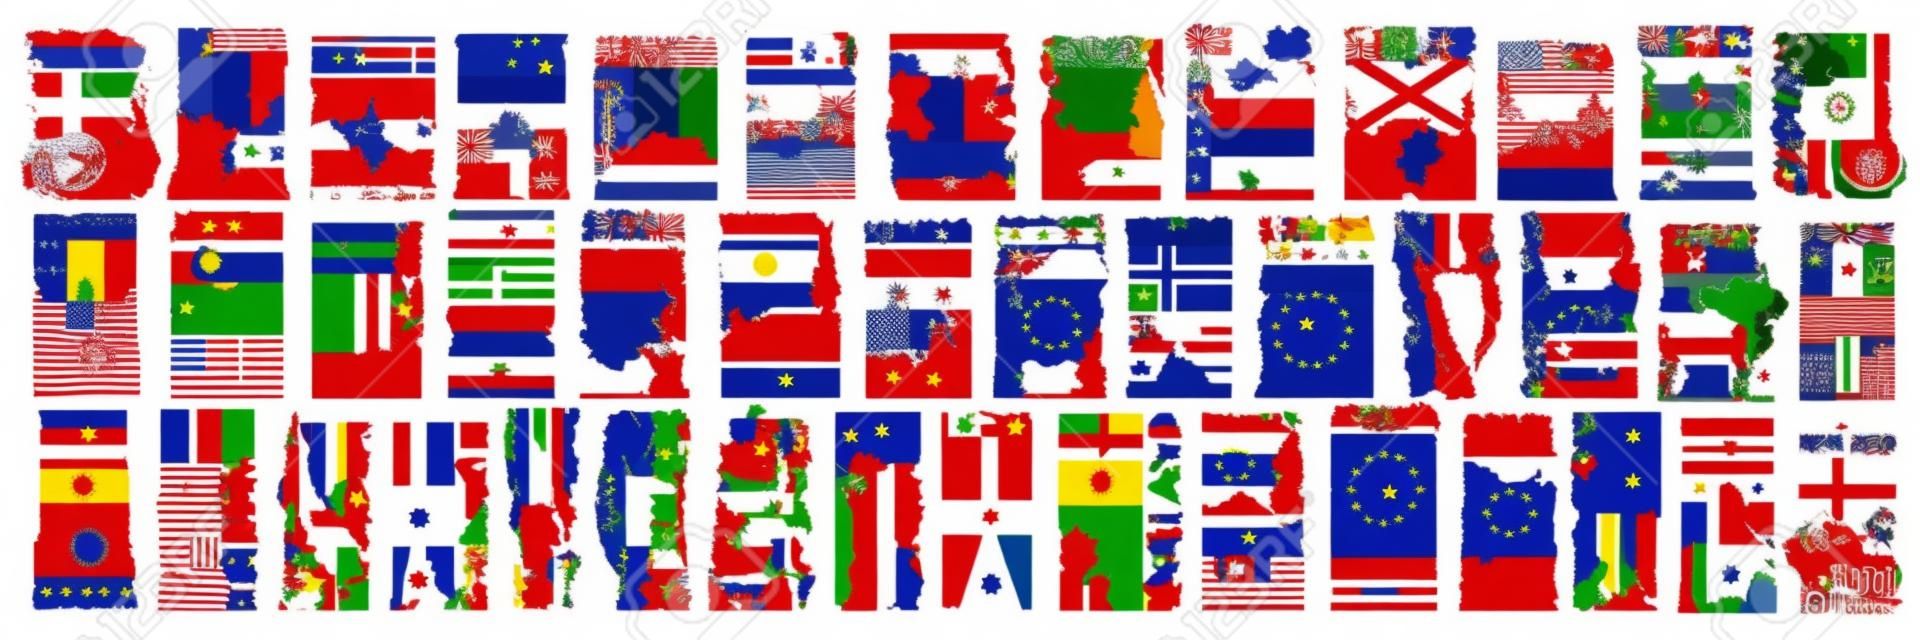 Conjunto de vetores de países europeus com bandeiras e símbolos, 43 rótulos verticais isolados com bandeiras estaduais nacionais e fonte de pincel para palavras diferentes, adesivos de design de arte para o dia da independência europeia.